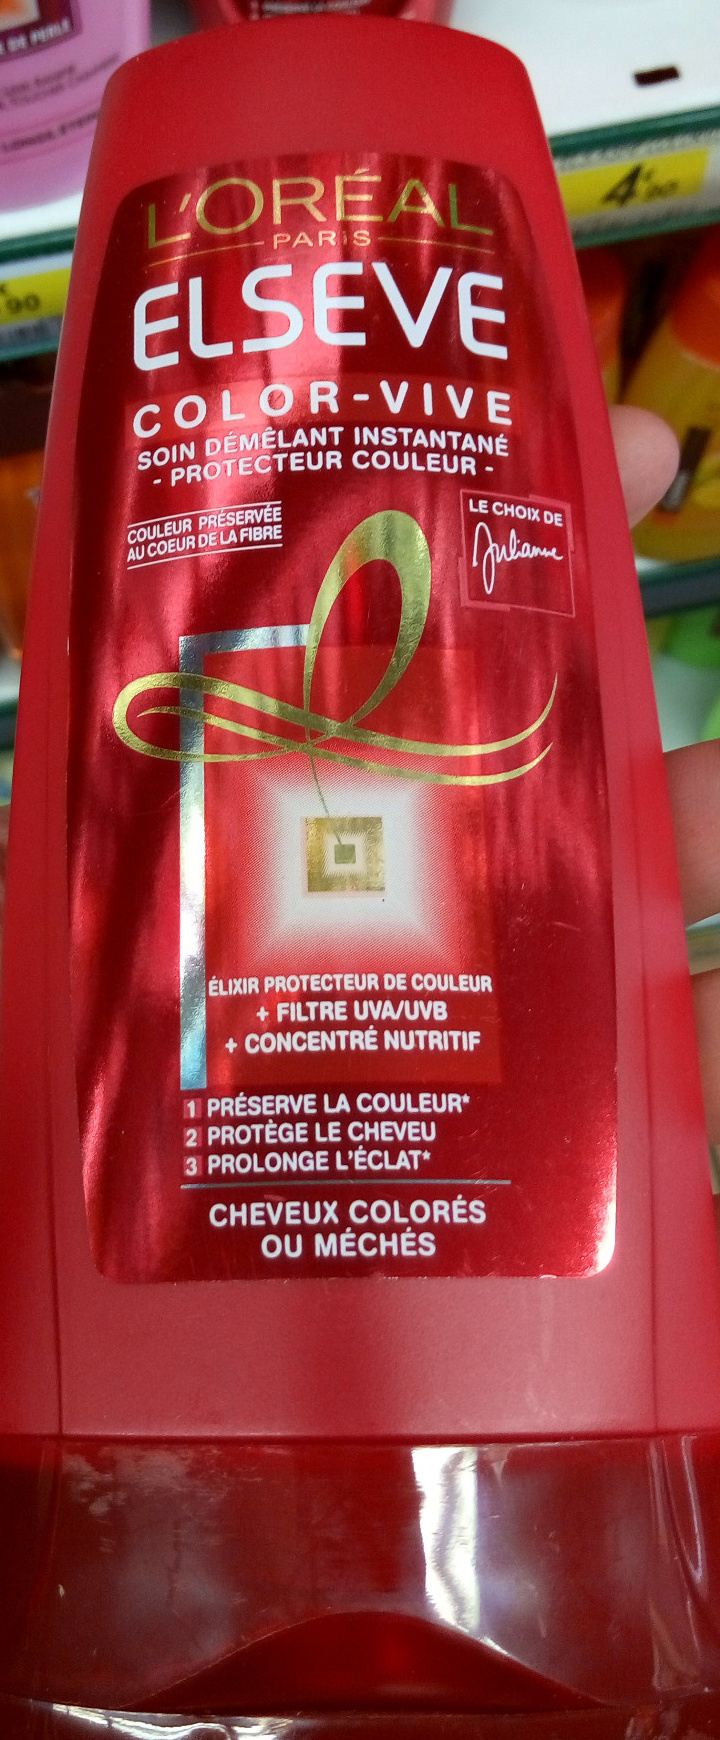 Color-Vive Soin démêlant instantané Cheveux colorés ou mêchés - Product - fr